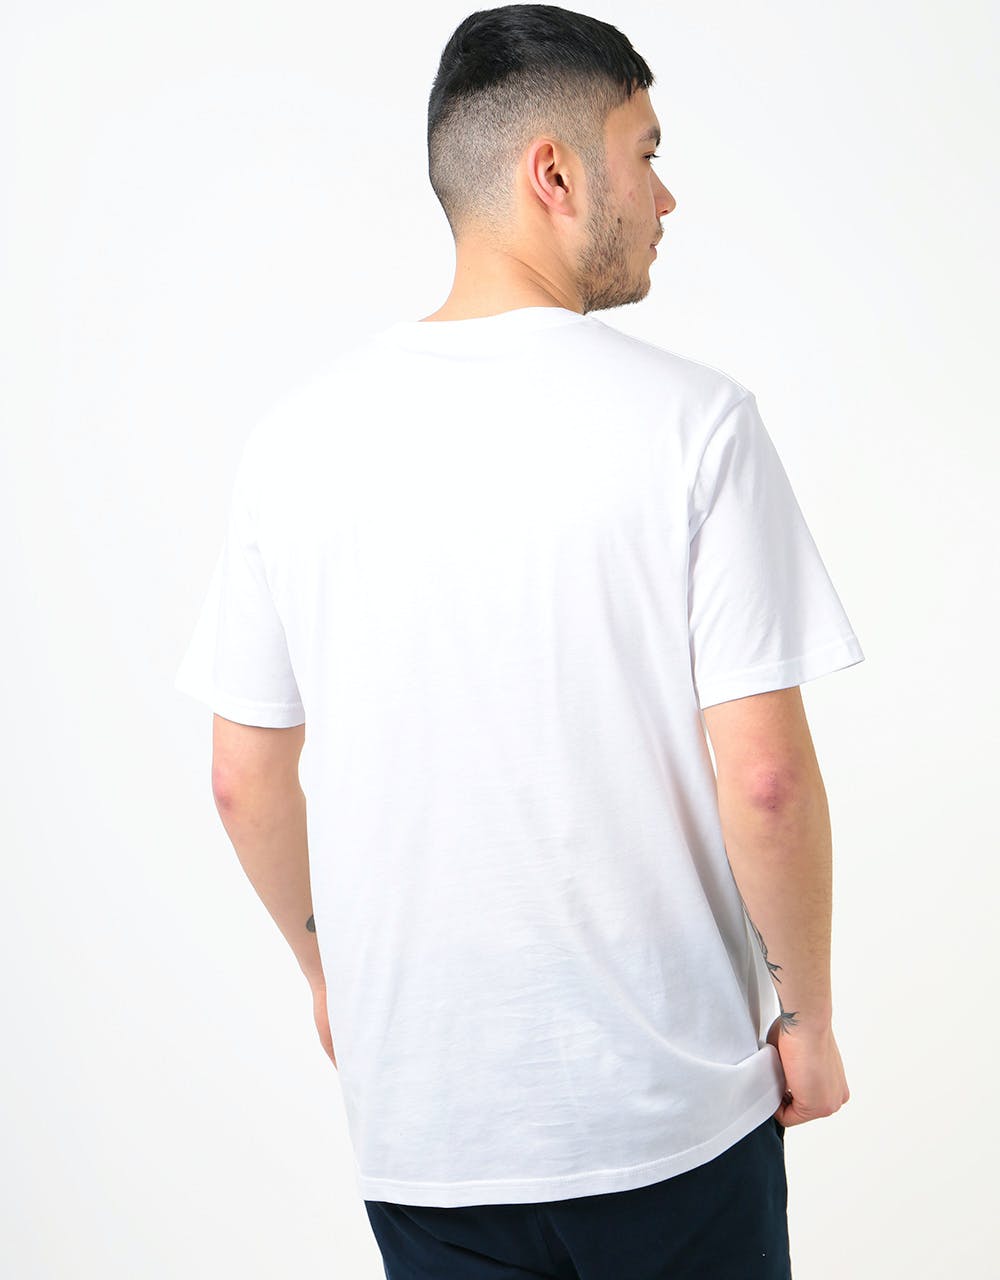 Vans OG Checker T-Shirt - White